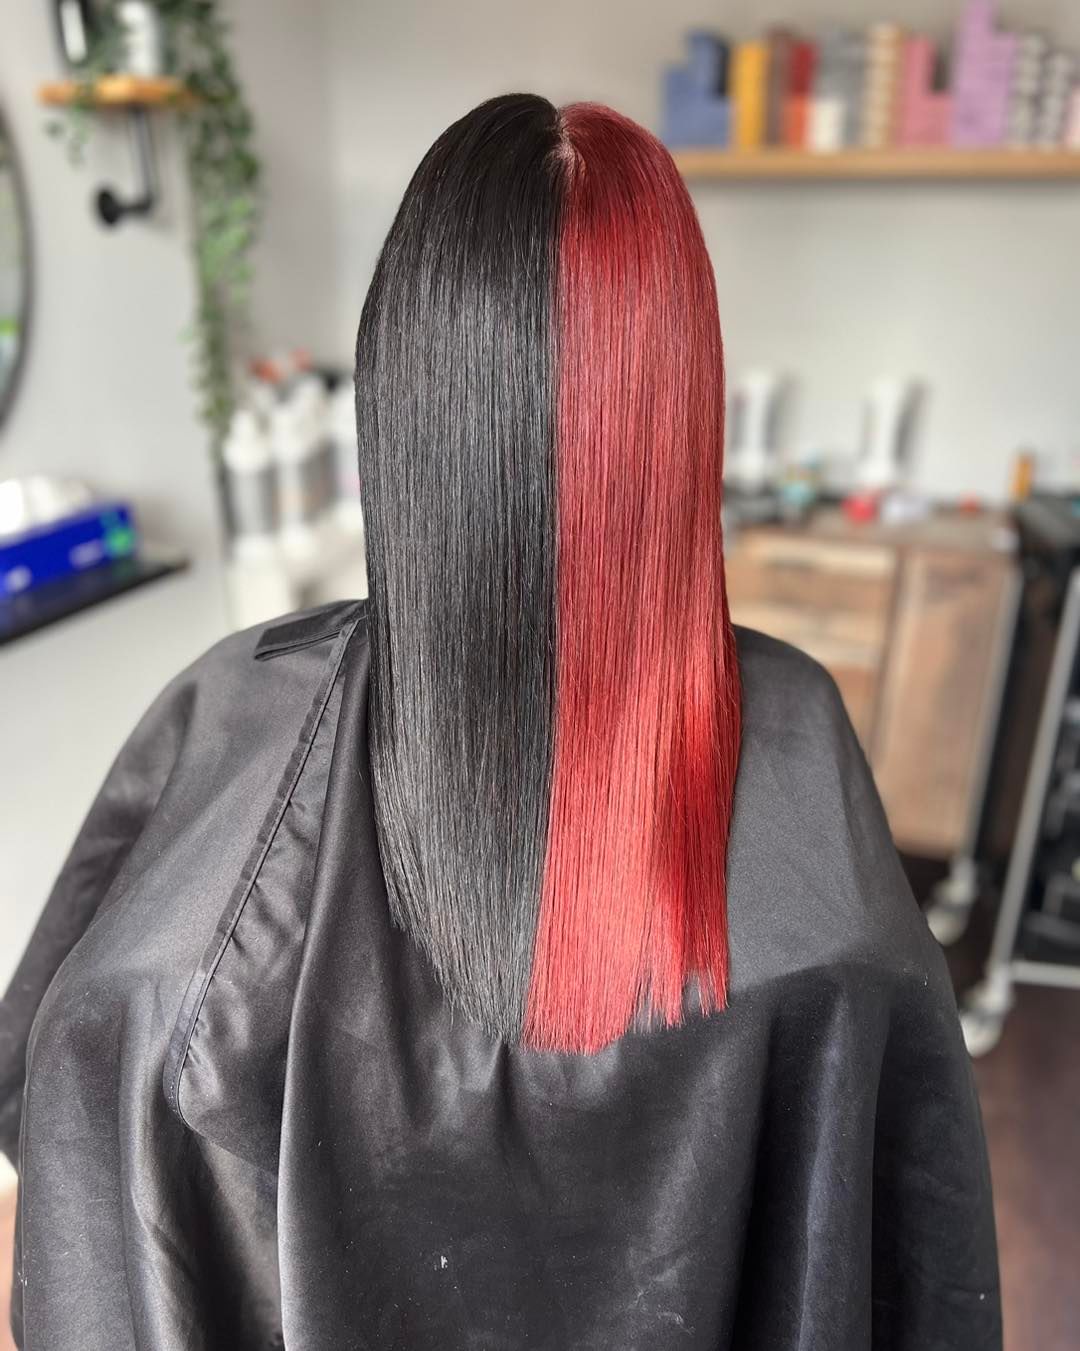 pelo mitad rojo y mitad negro